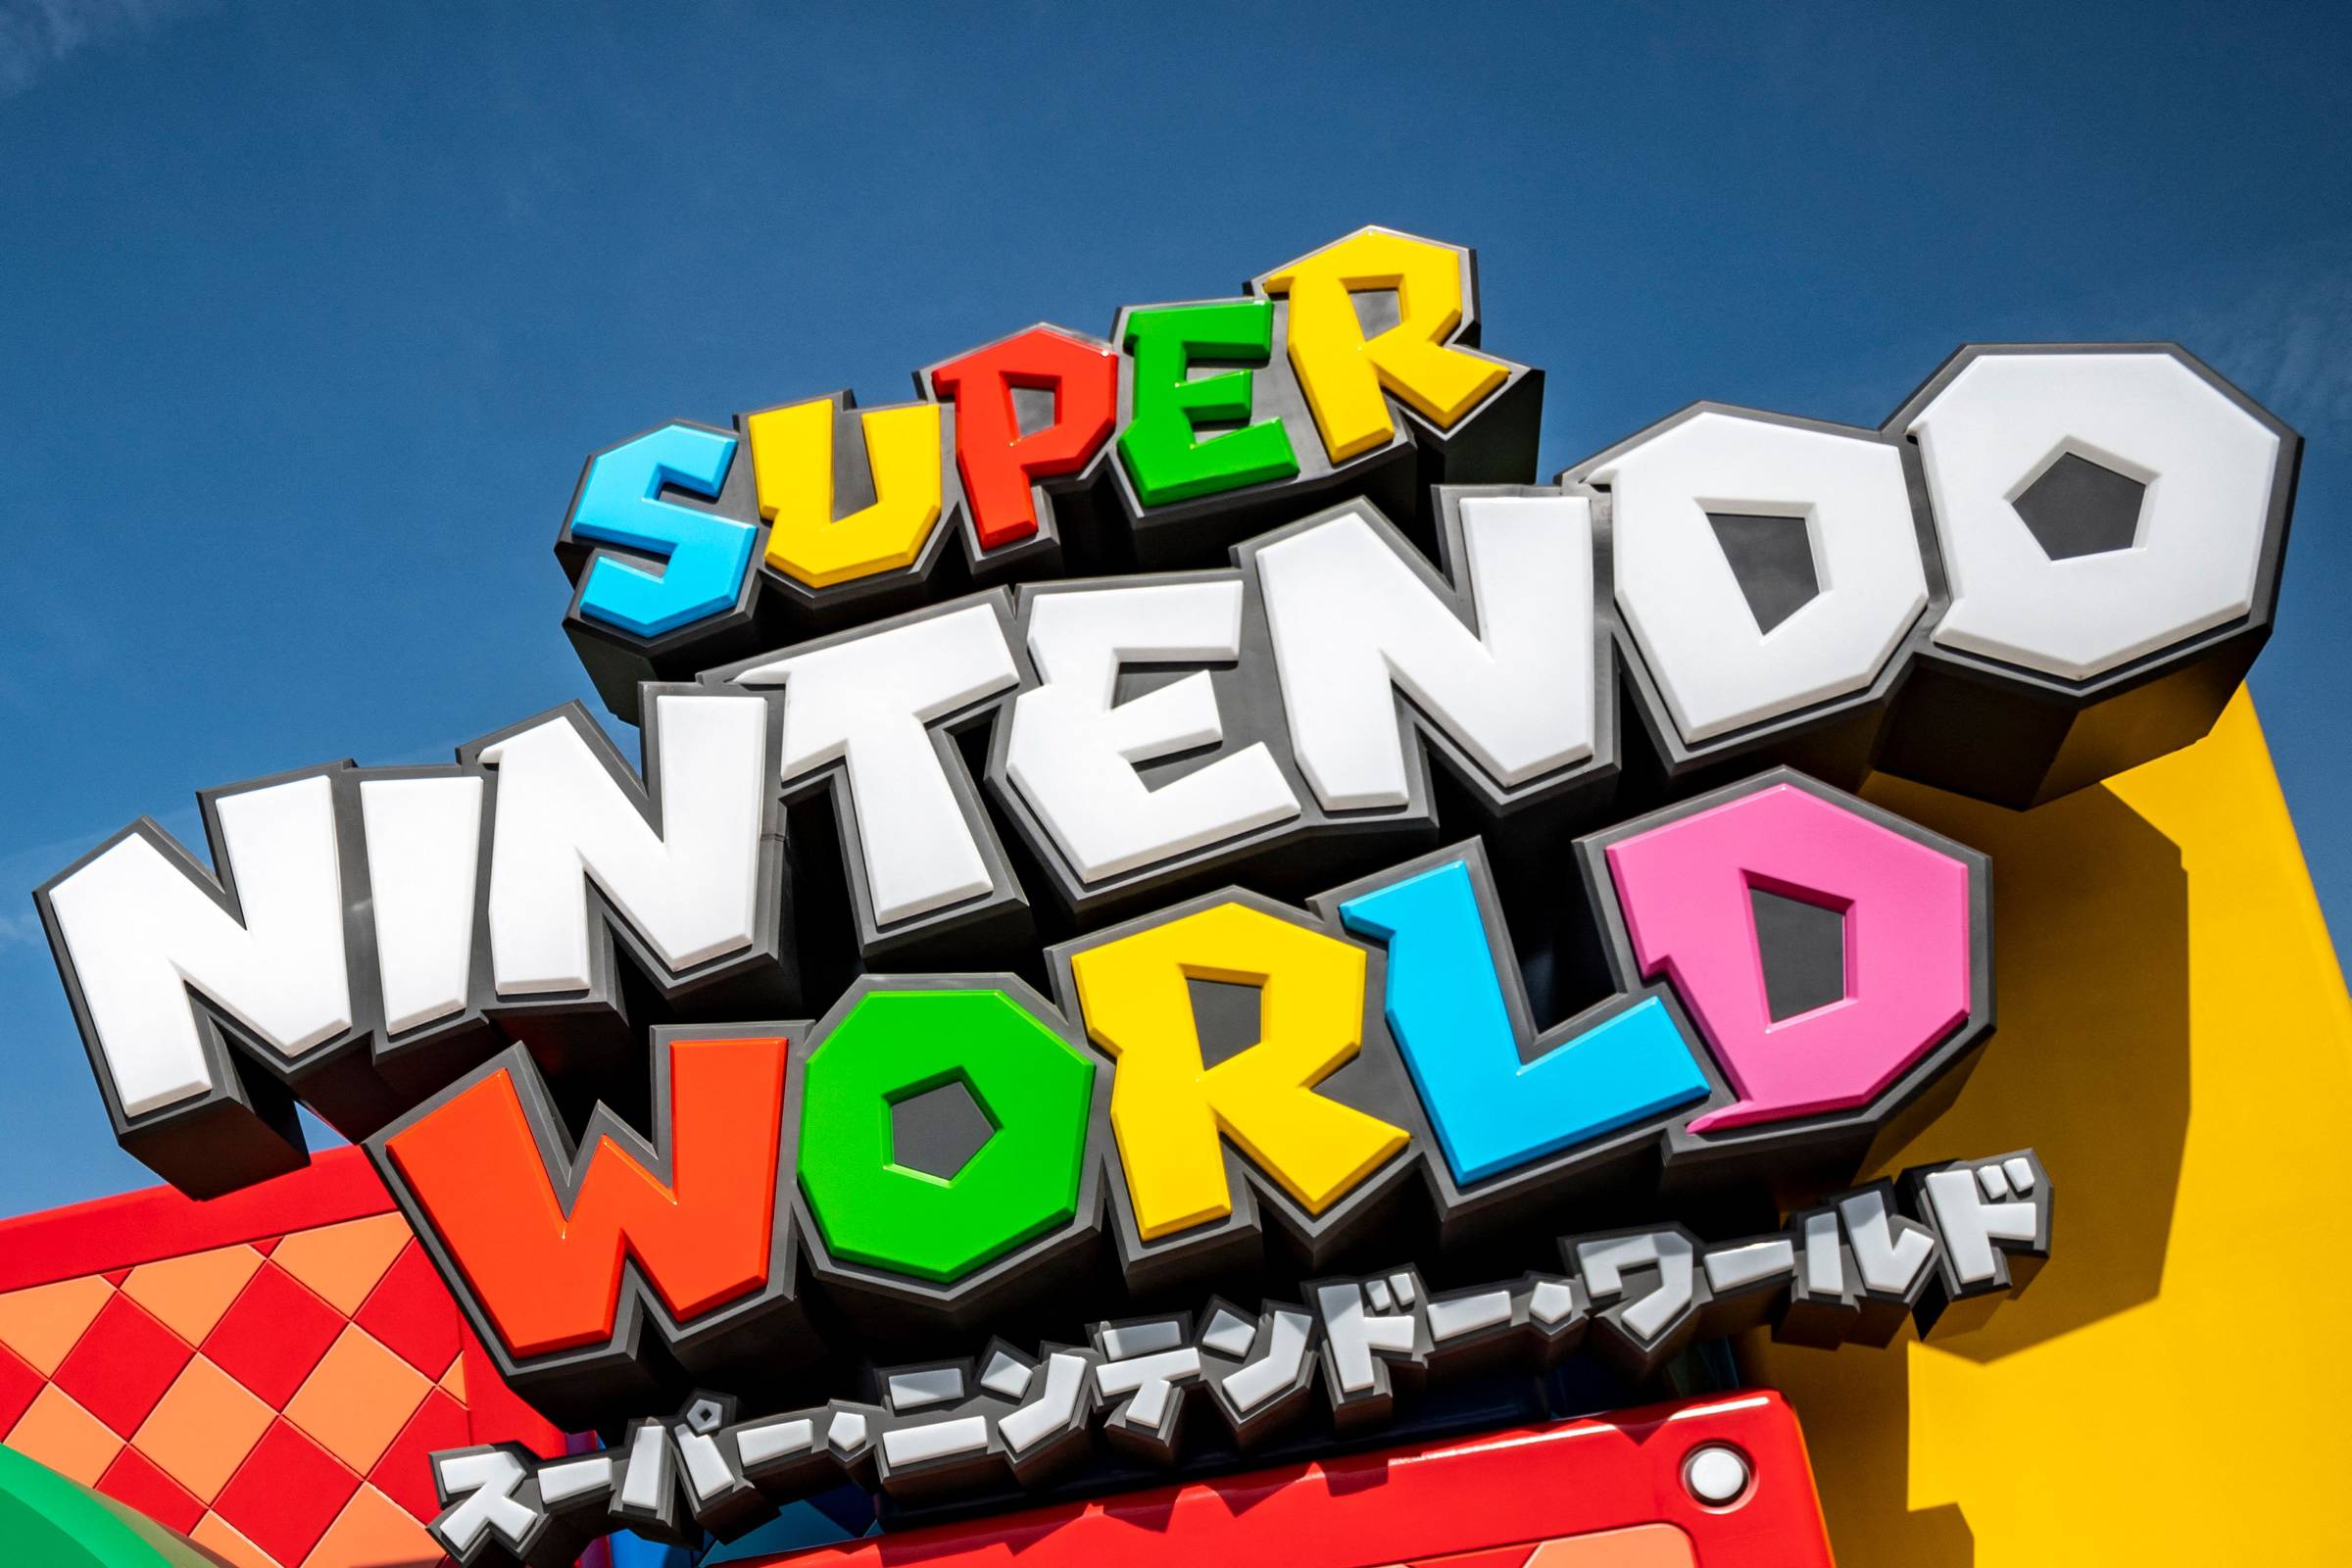 Jogo ″Super Mario 64″ por abrir foi vendido por 1,56 milhões de dólares